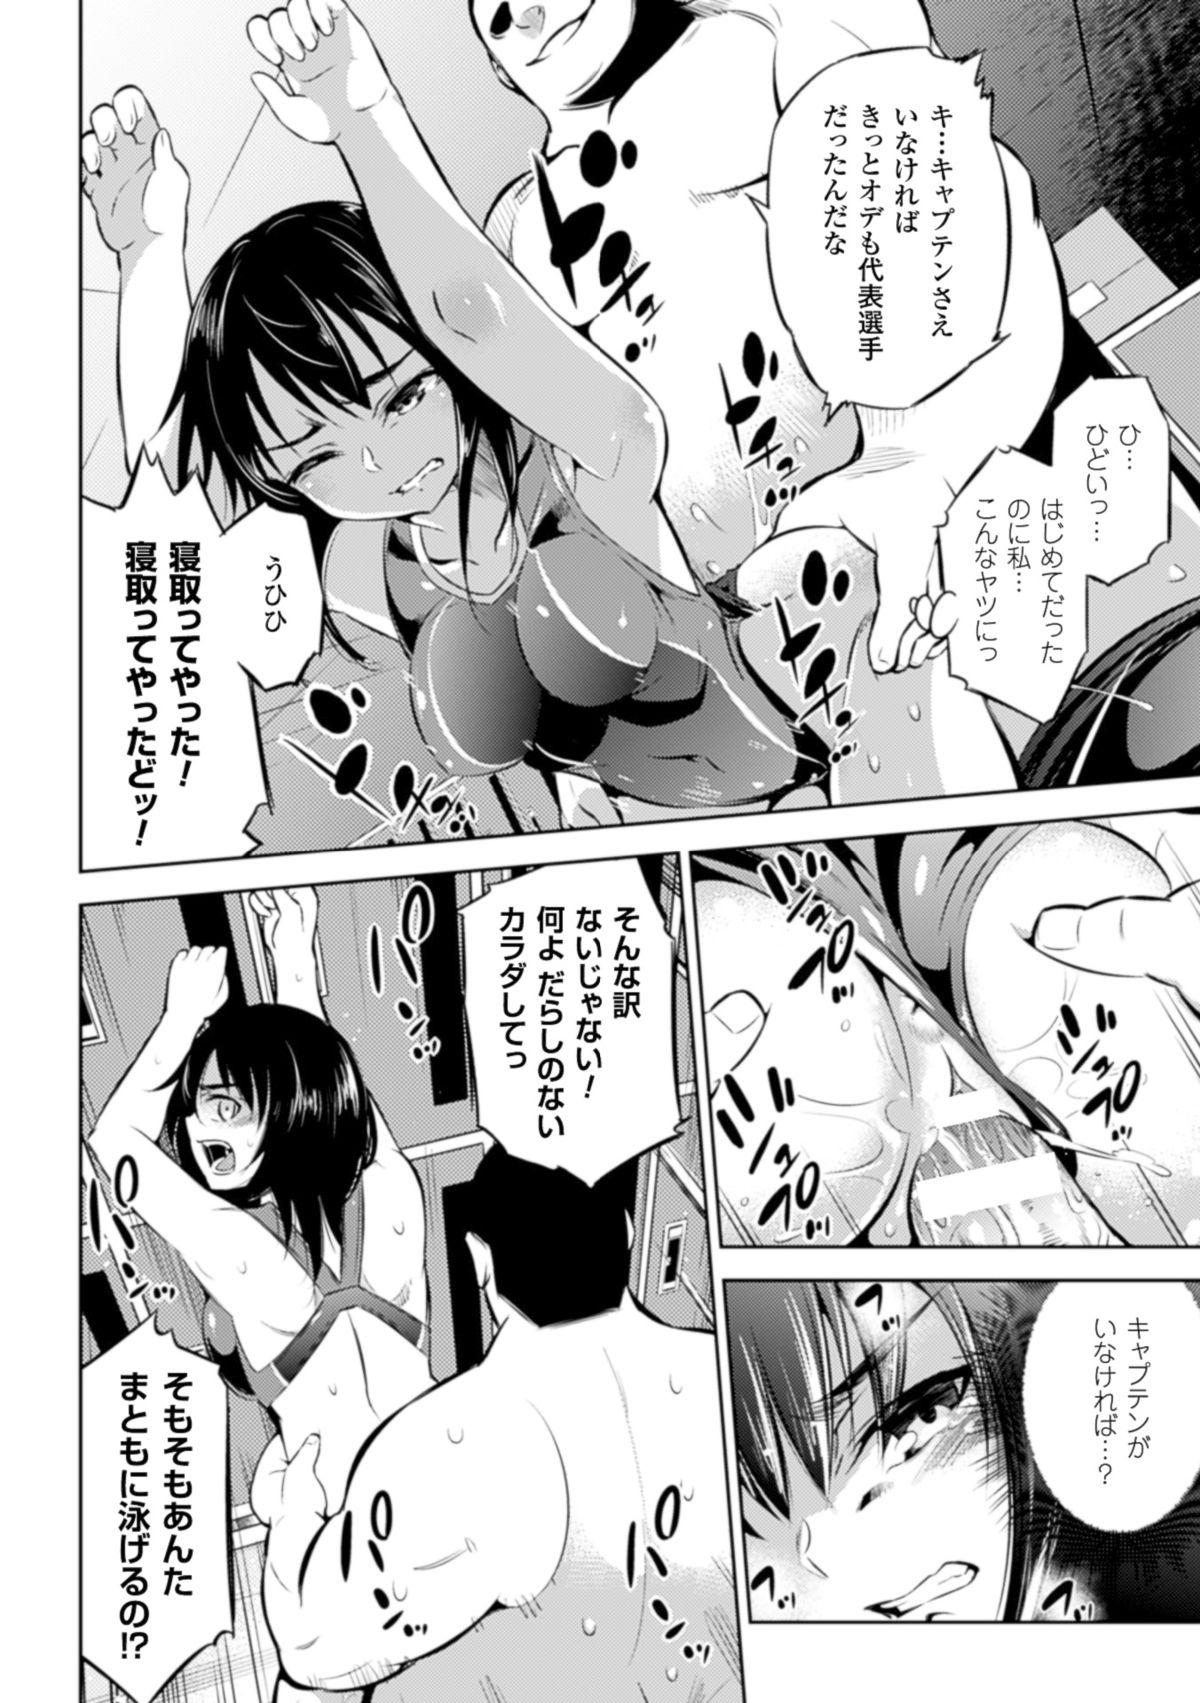 Bwc [Anthology] 2D Comic Magazine - ReaJuu Bishoujo-tachi o Haramase Ninshin! Vol. 2 [Digital] Orgia - Page 12